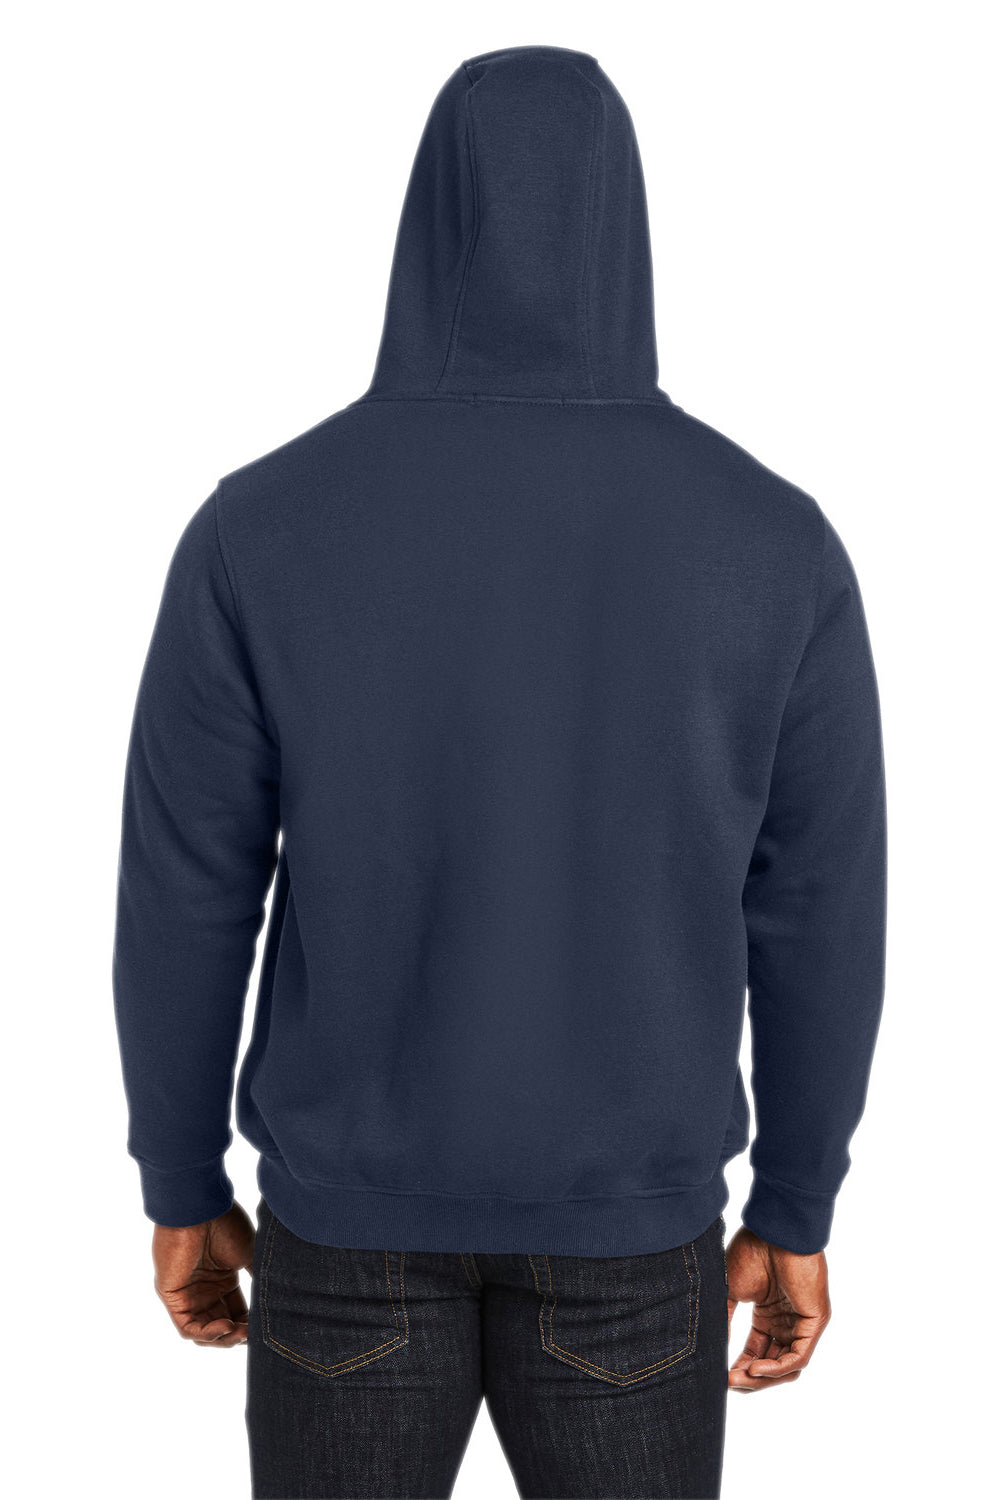 Harriton M711/M711T Mens Climabloc Full Zip Hooded Sweatshirt Hoodie Dark Navy Blue Back